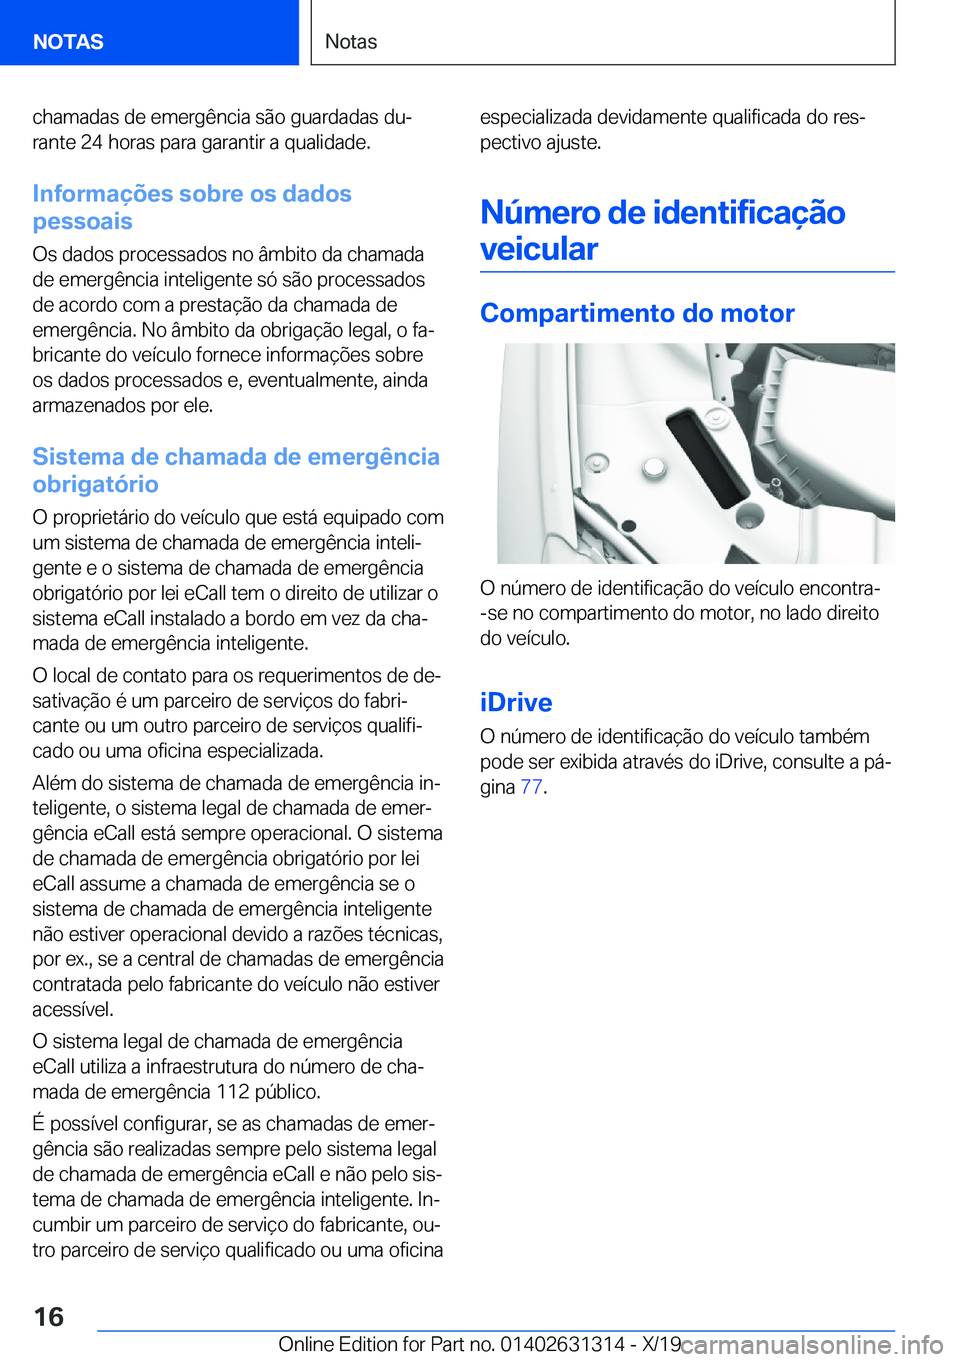 BMW M8 2020  Manual do condutor (in Portuguese) �c�h�a�m�a�d�a�s��d�e��e�m�e�r�g�ê�n�c�i�a��s�ã�o��g�u�a�r�d�a�d�a�s��d�uª
�r�a�n�t�e��2�4��h�o�r�a�s��p�a�r�a��g�a�r�a�n�t�i�r��a��q�u�a�l�i�d�a�d�e�.
�I�n�f�o�r�m�a�